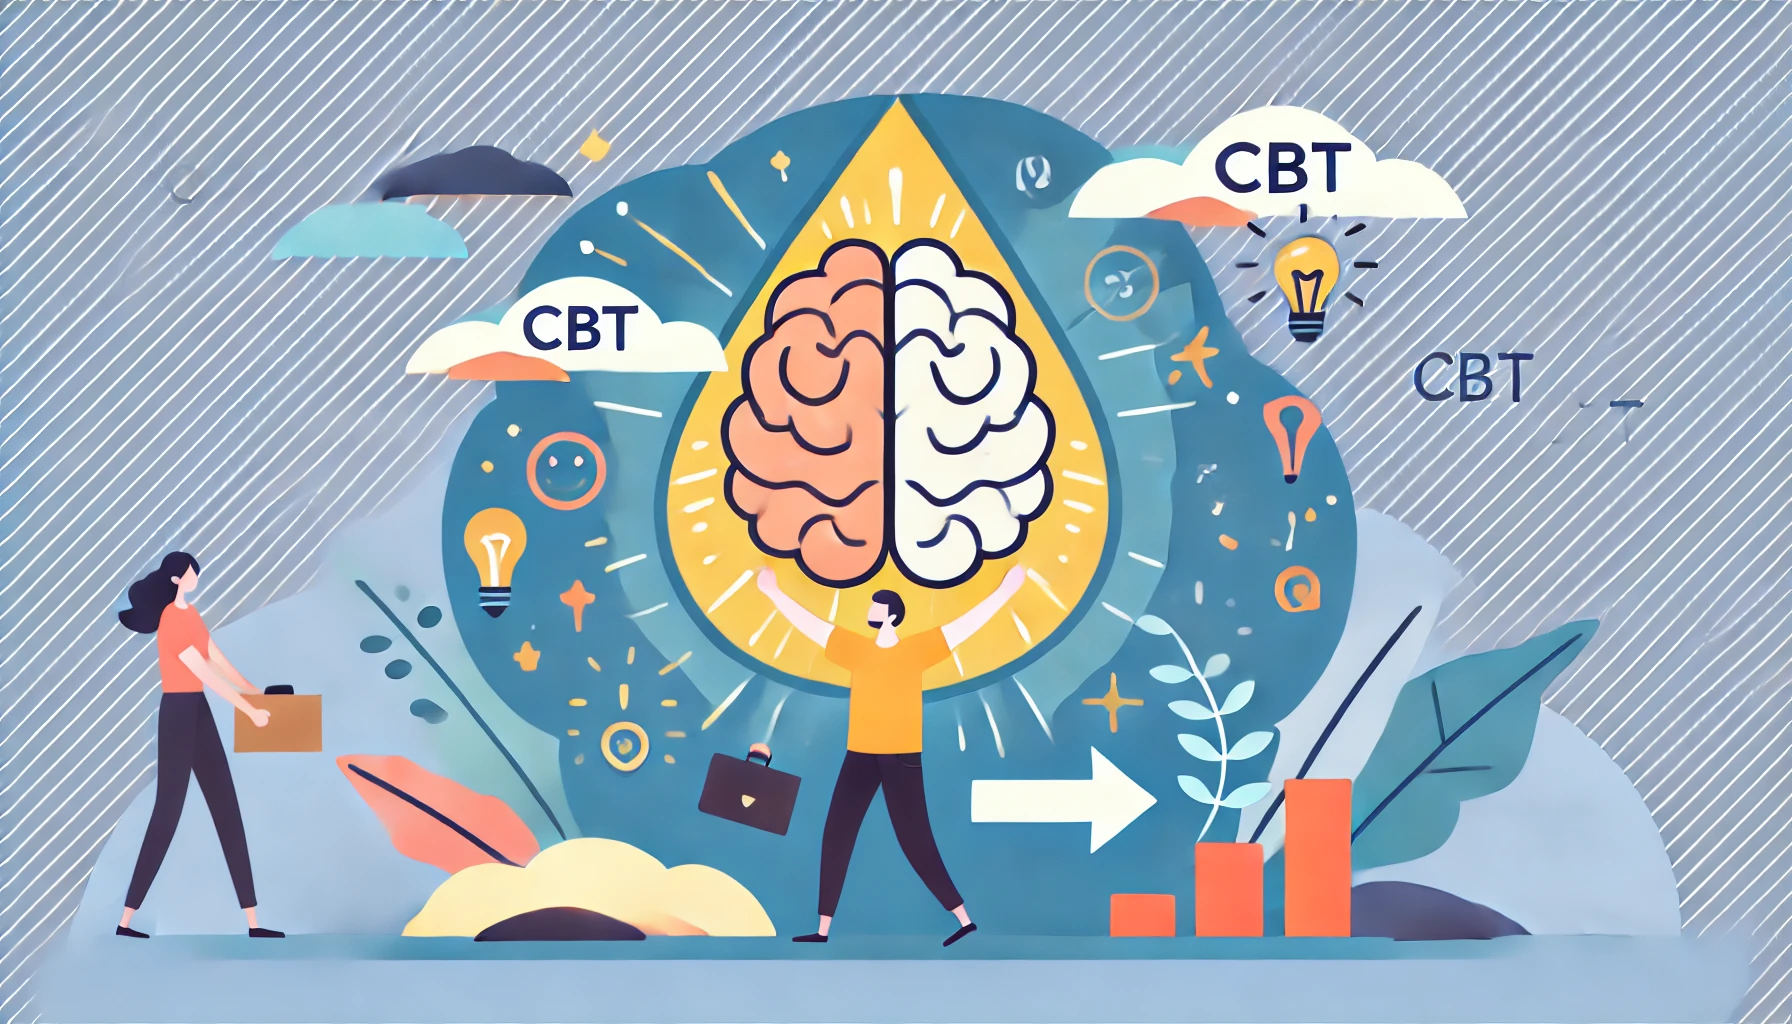 טיפול CBT יעיל לשינוי דפוסי חשיבה והתנהגות. גלו את עקרונות הטיפול הפסיכולוגי cbt ושיטותיו לטיפול קוגניטיבי התנהגותי במבוגרים. מה זה cbt? קראו עכשיו!